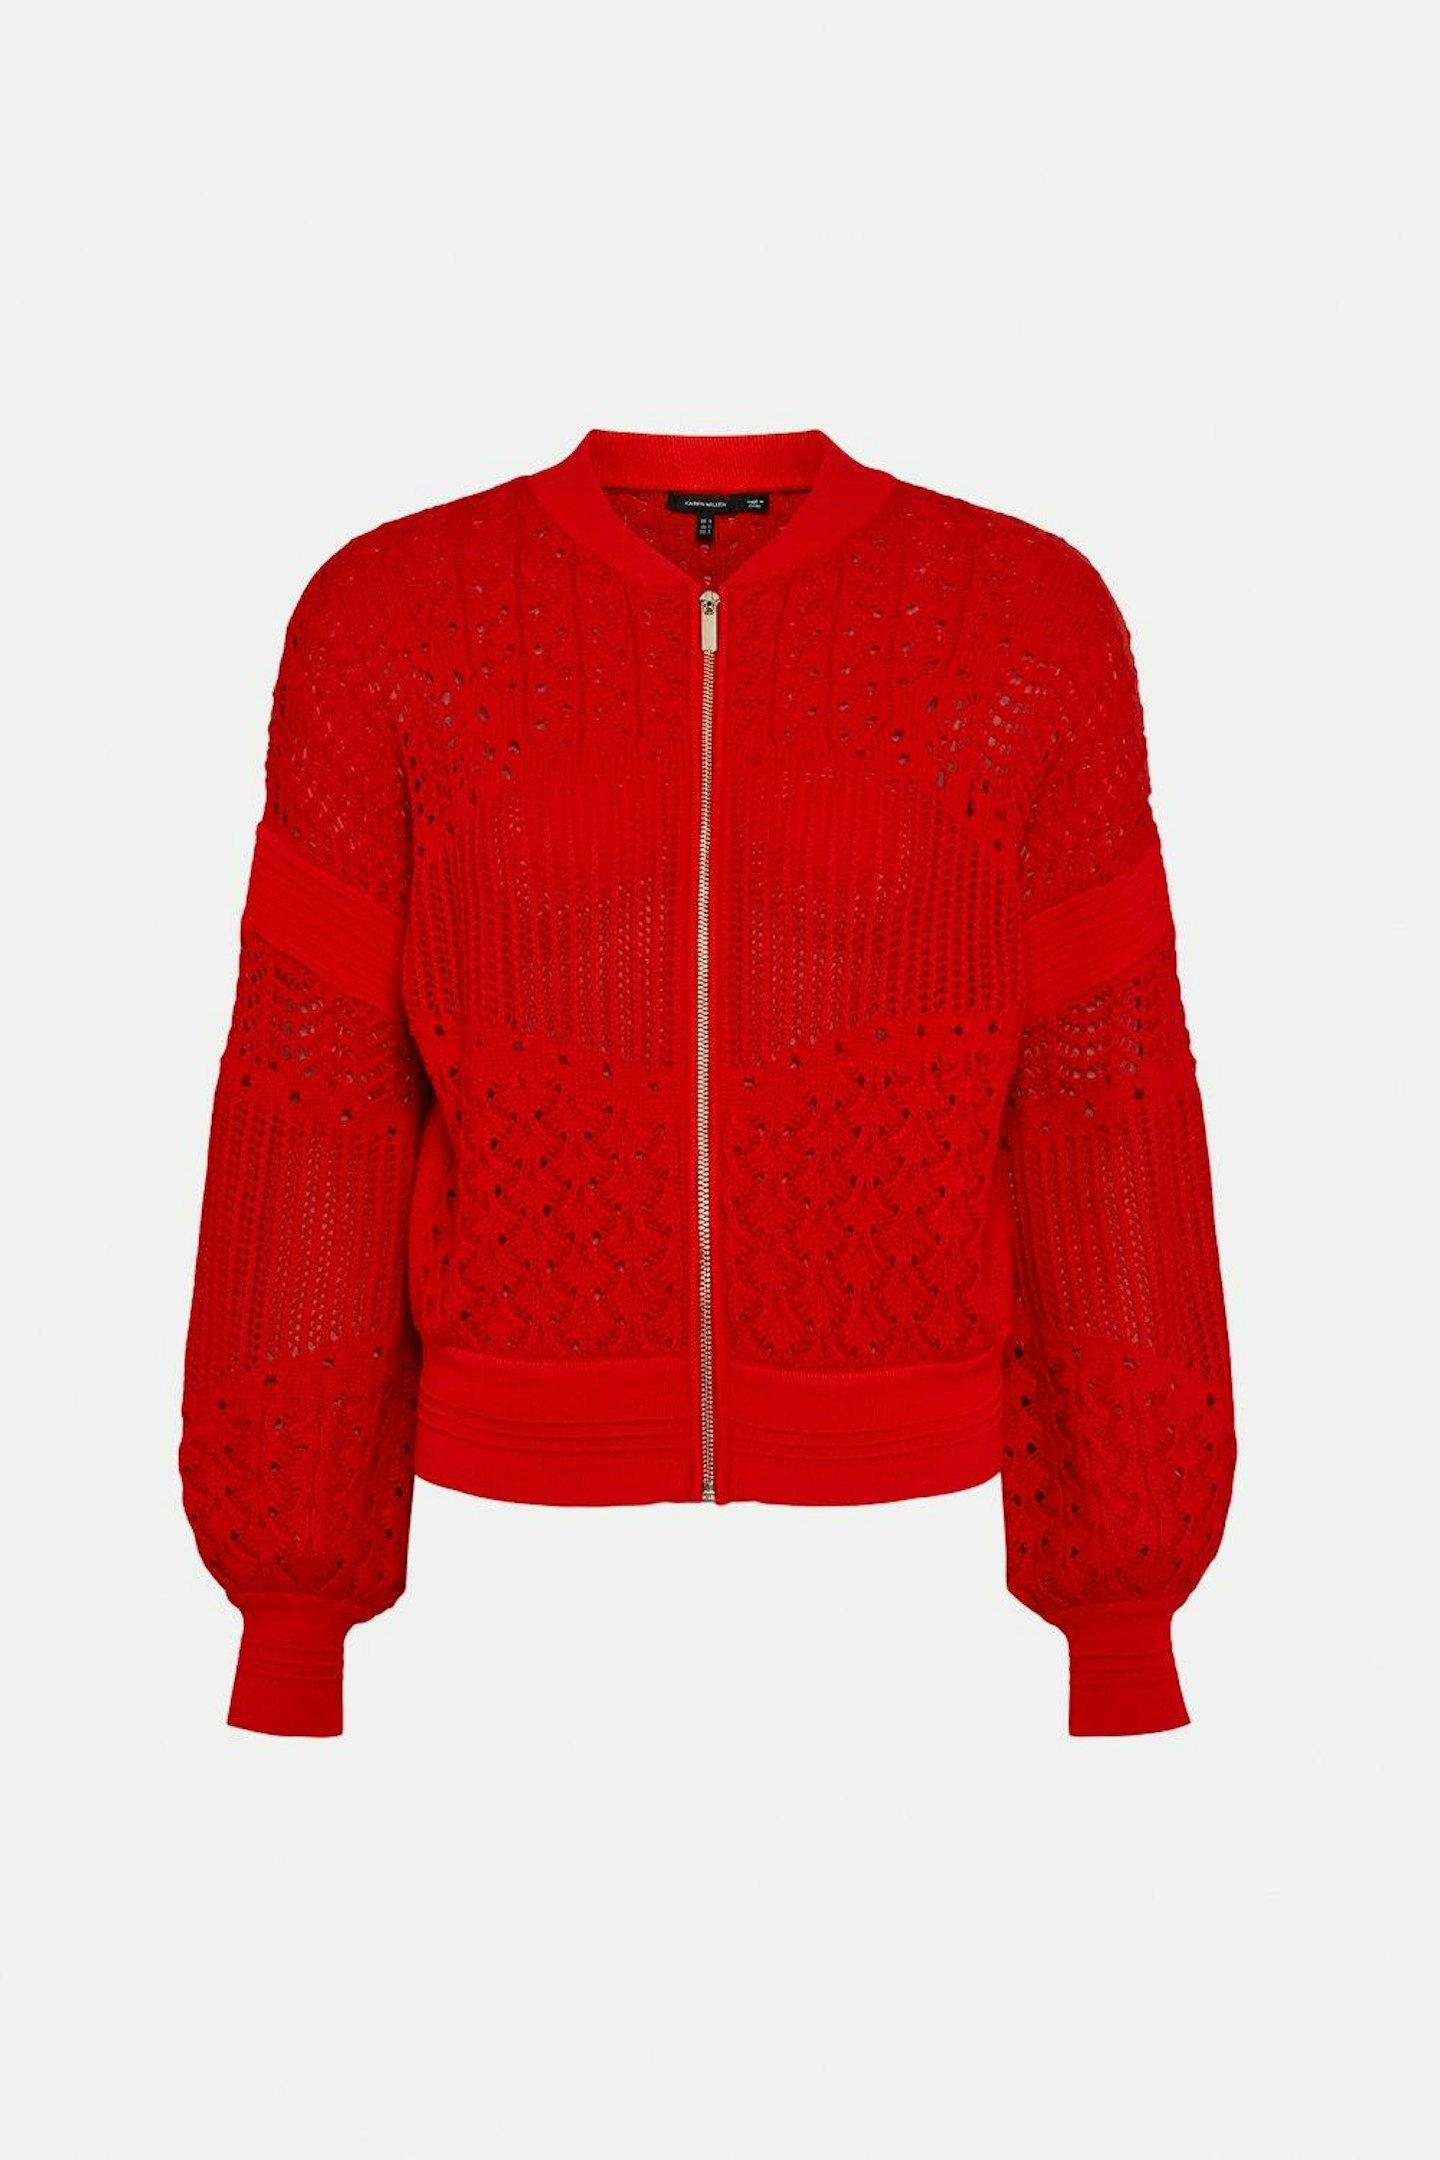 Karen Millen, Open Stitch Knit Bomber Jacket, £79.20